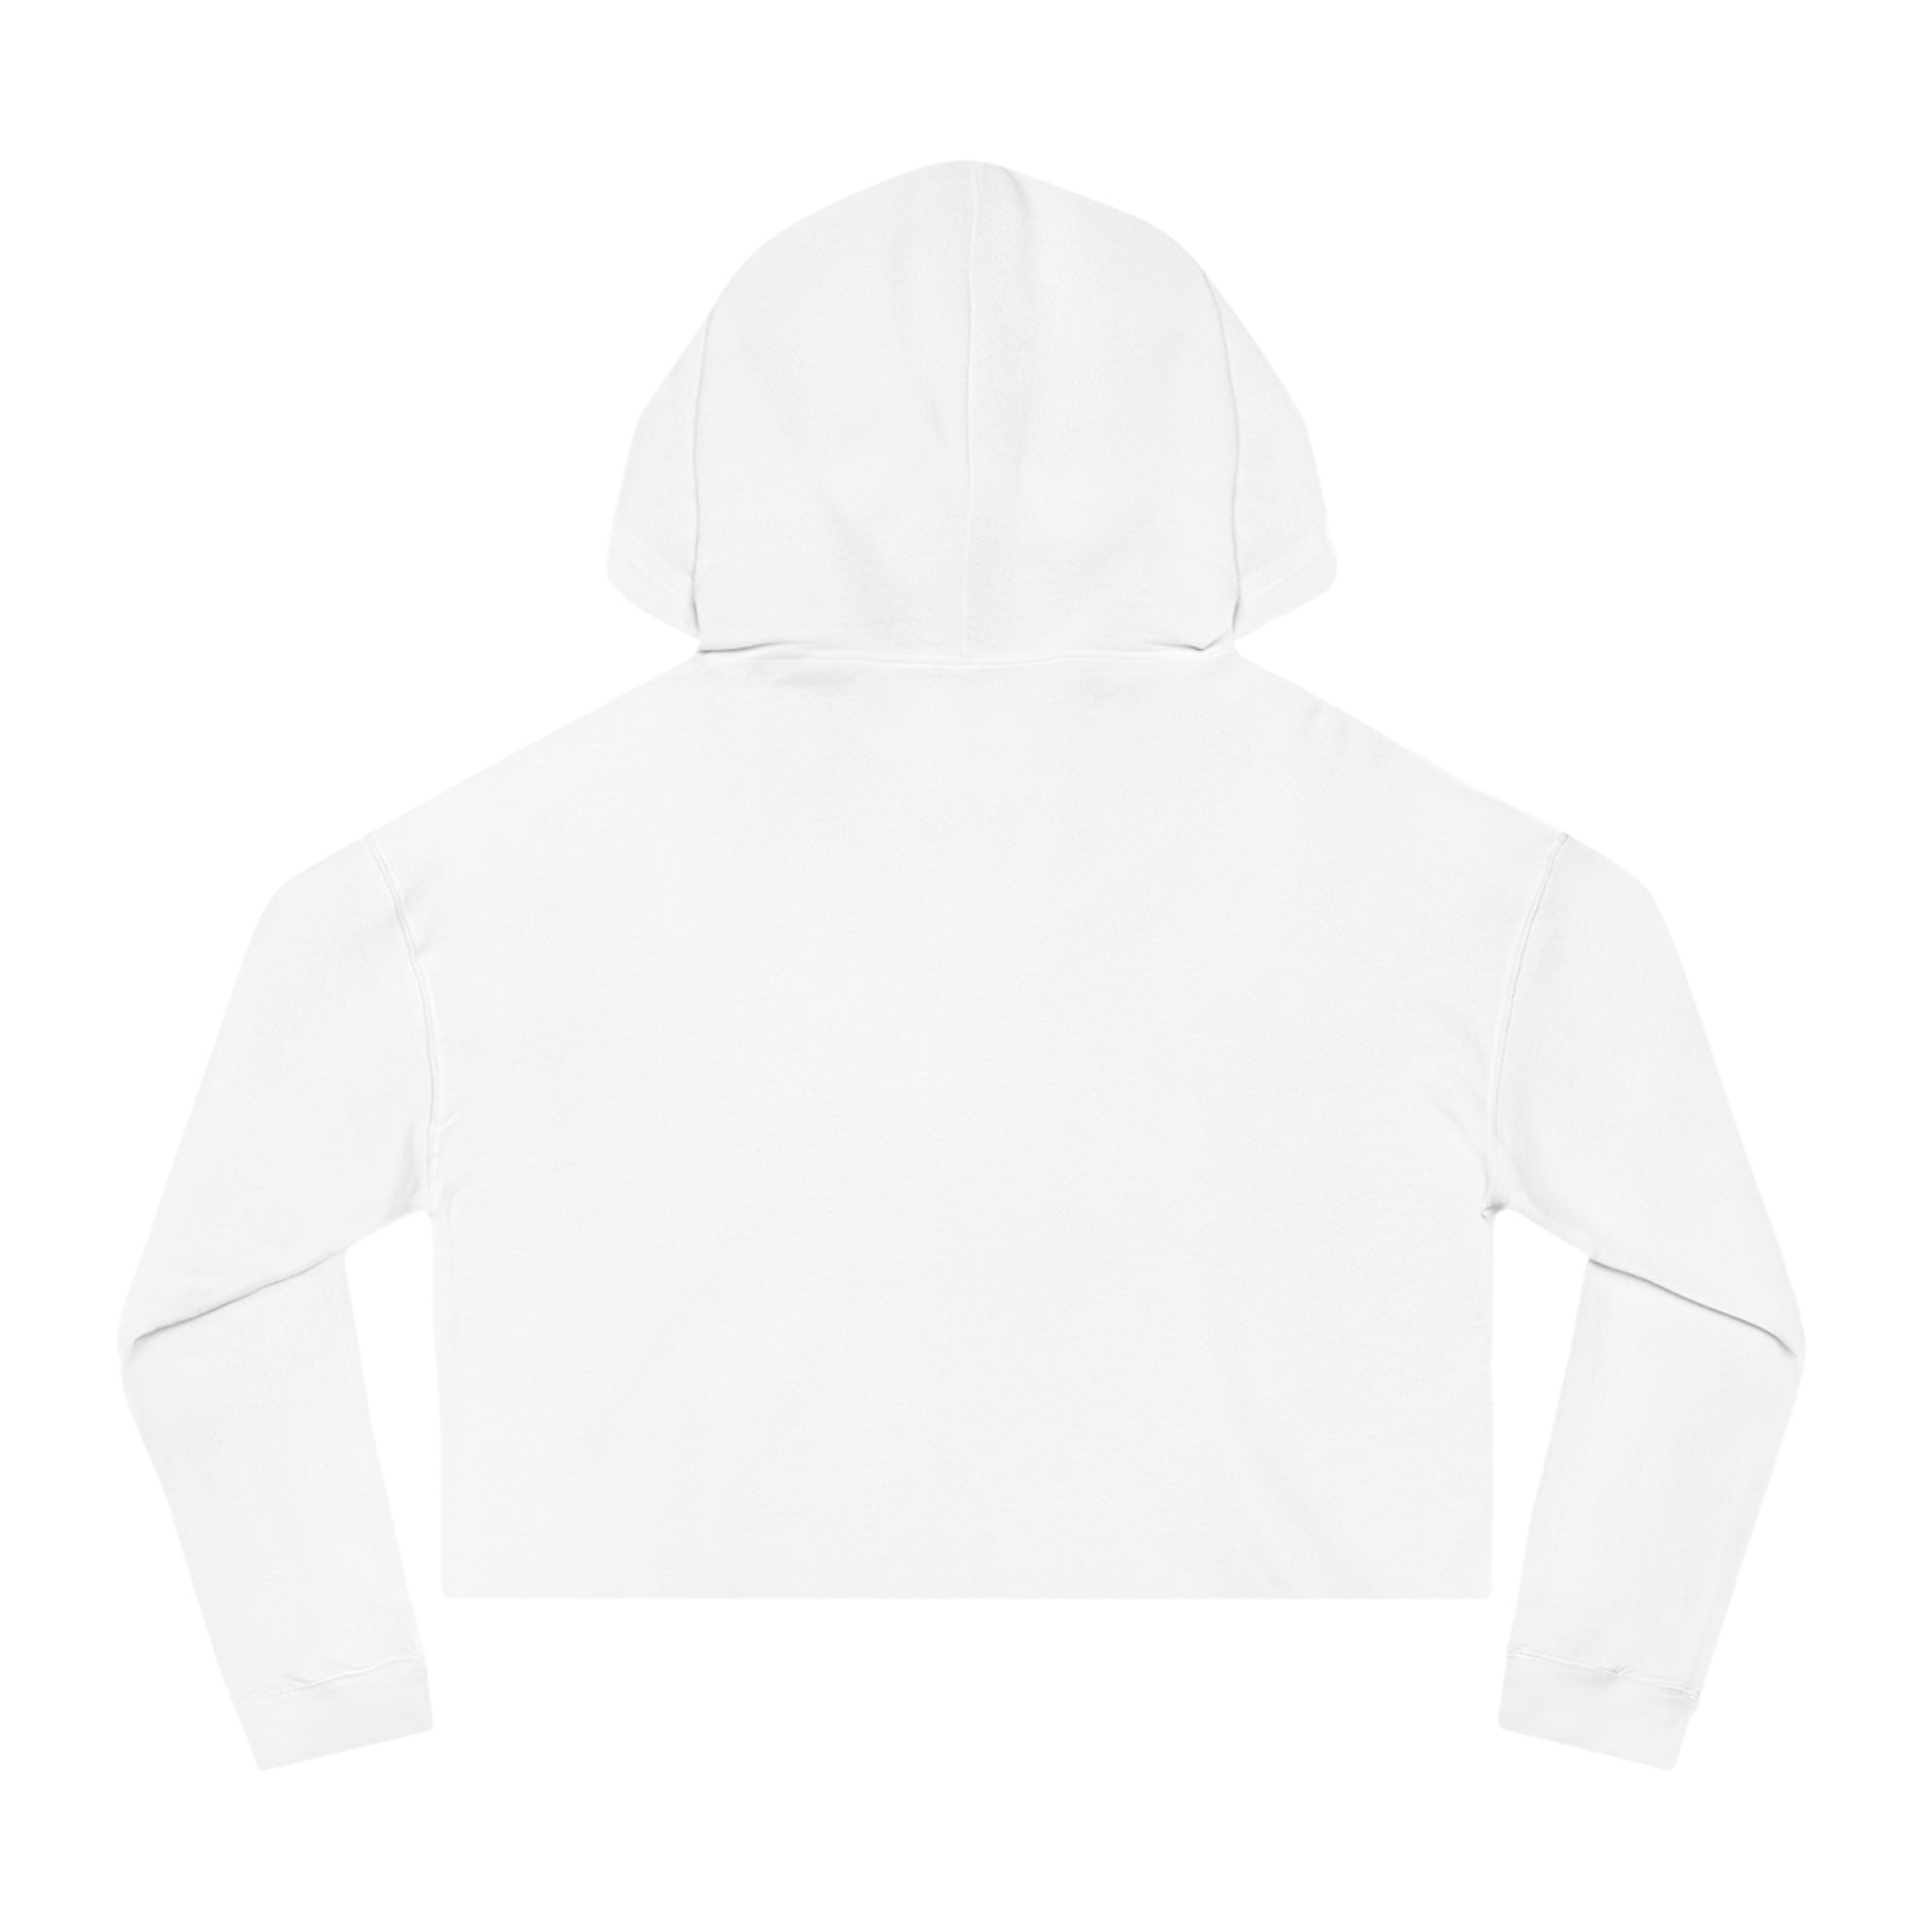 Gen Z Cropped Hooded Sweatshirt